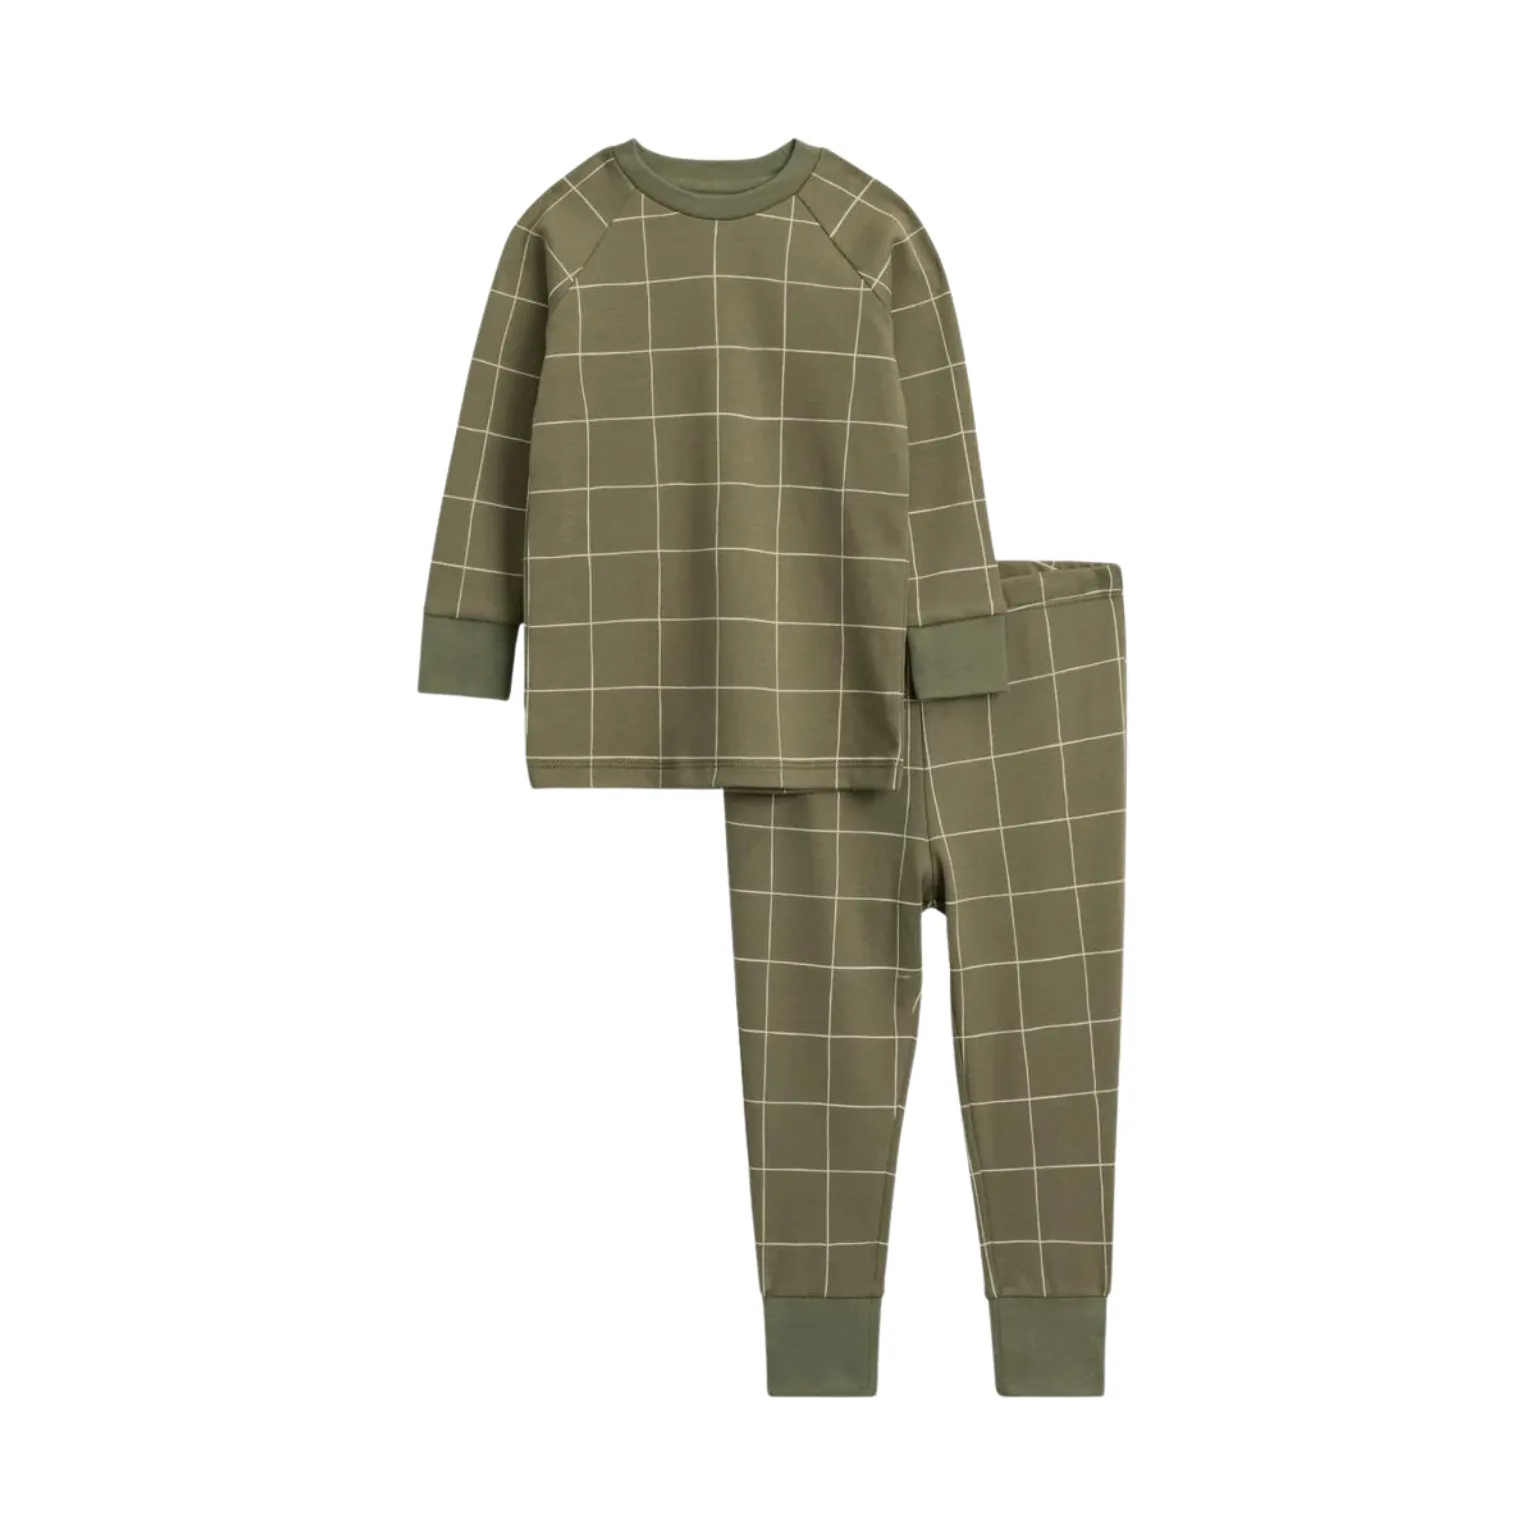 Manufacturing Boys Pajamas with reasonable price